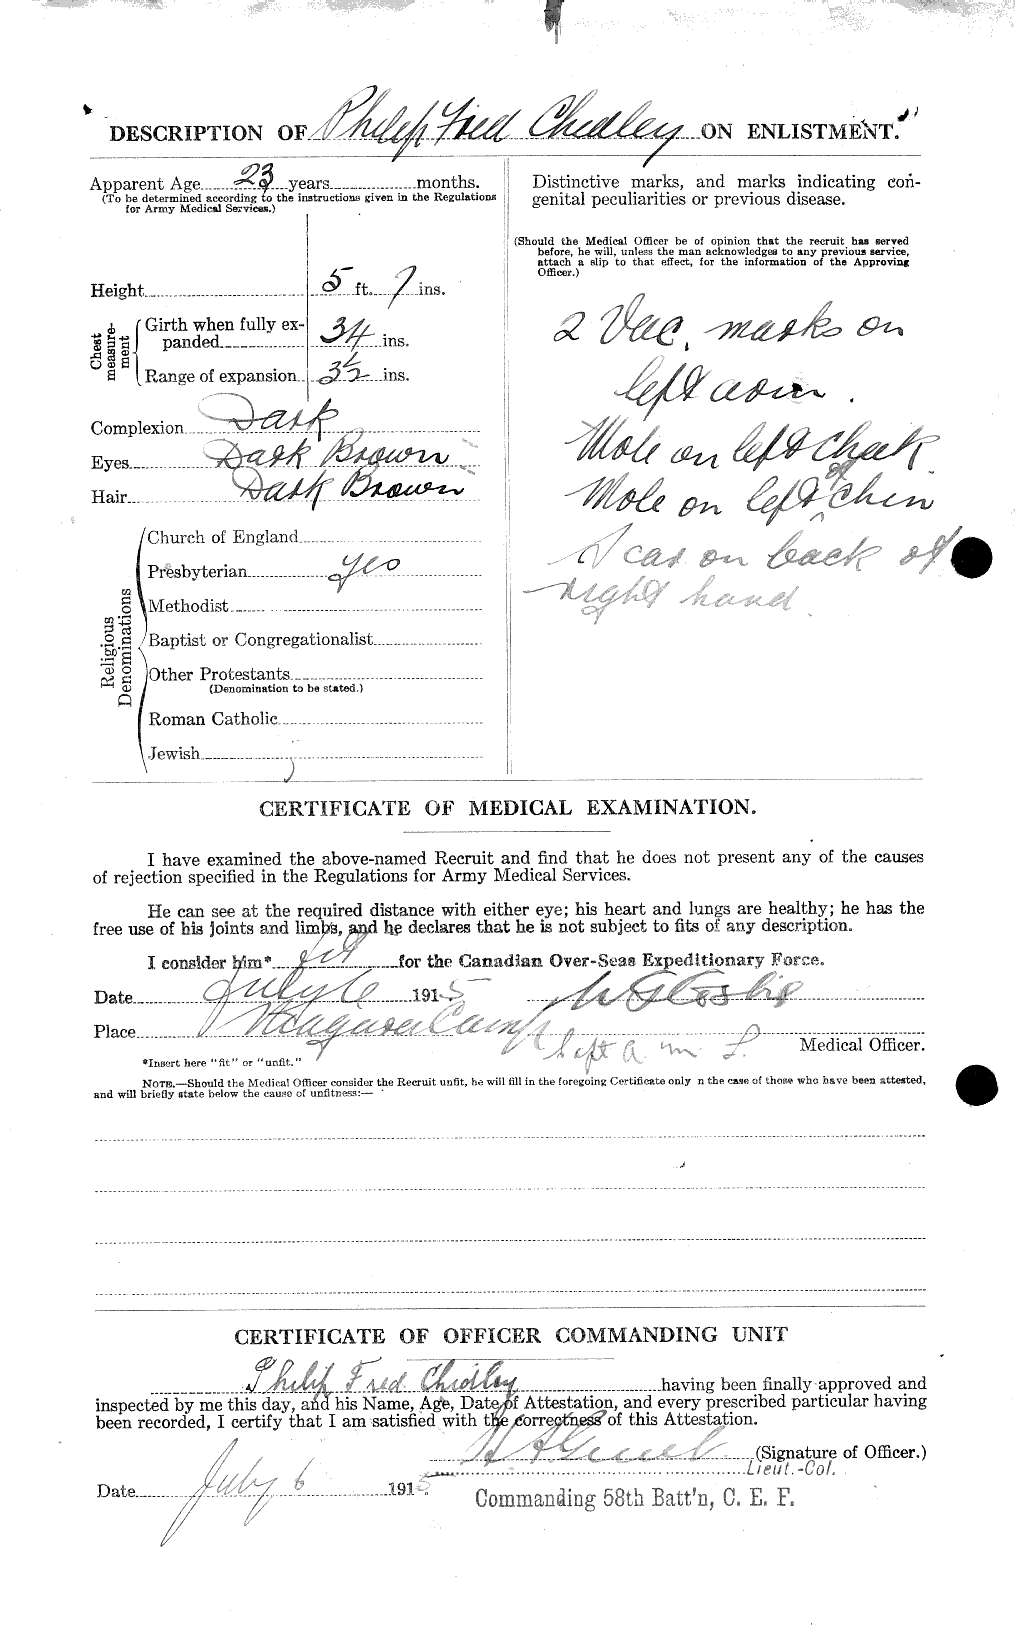 Dossiers du Personnel de la Première Guerre mondiale - CEC 020311b